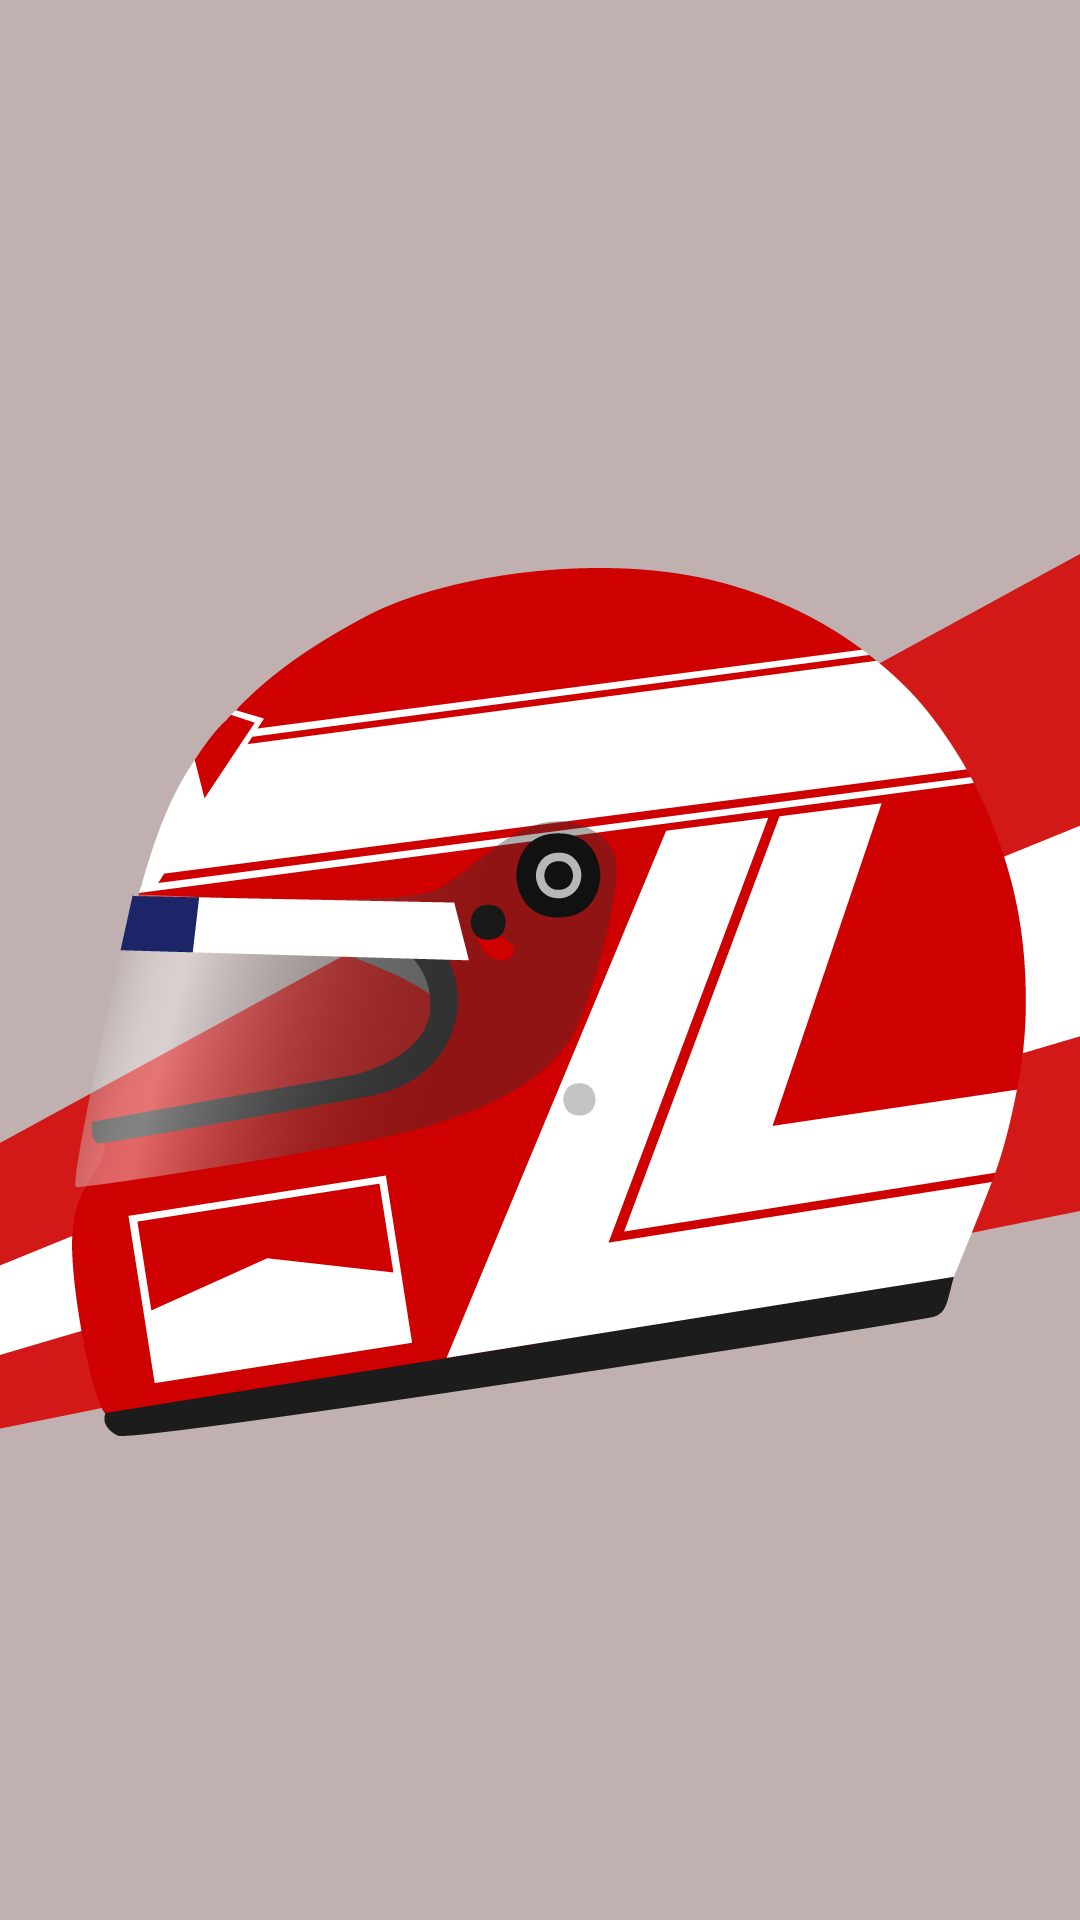 Design Niki Lauda S Helmet Felix Dicit